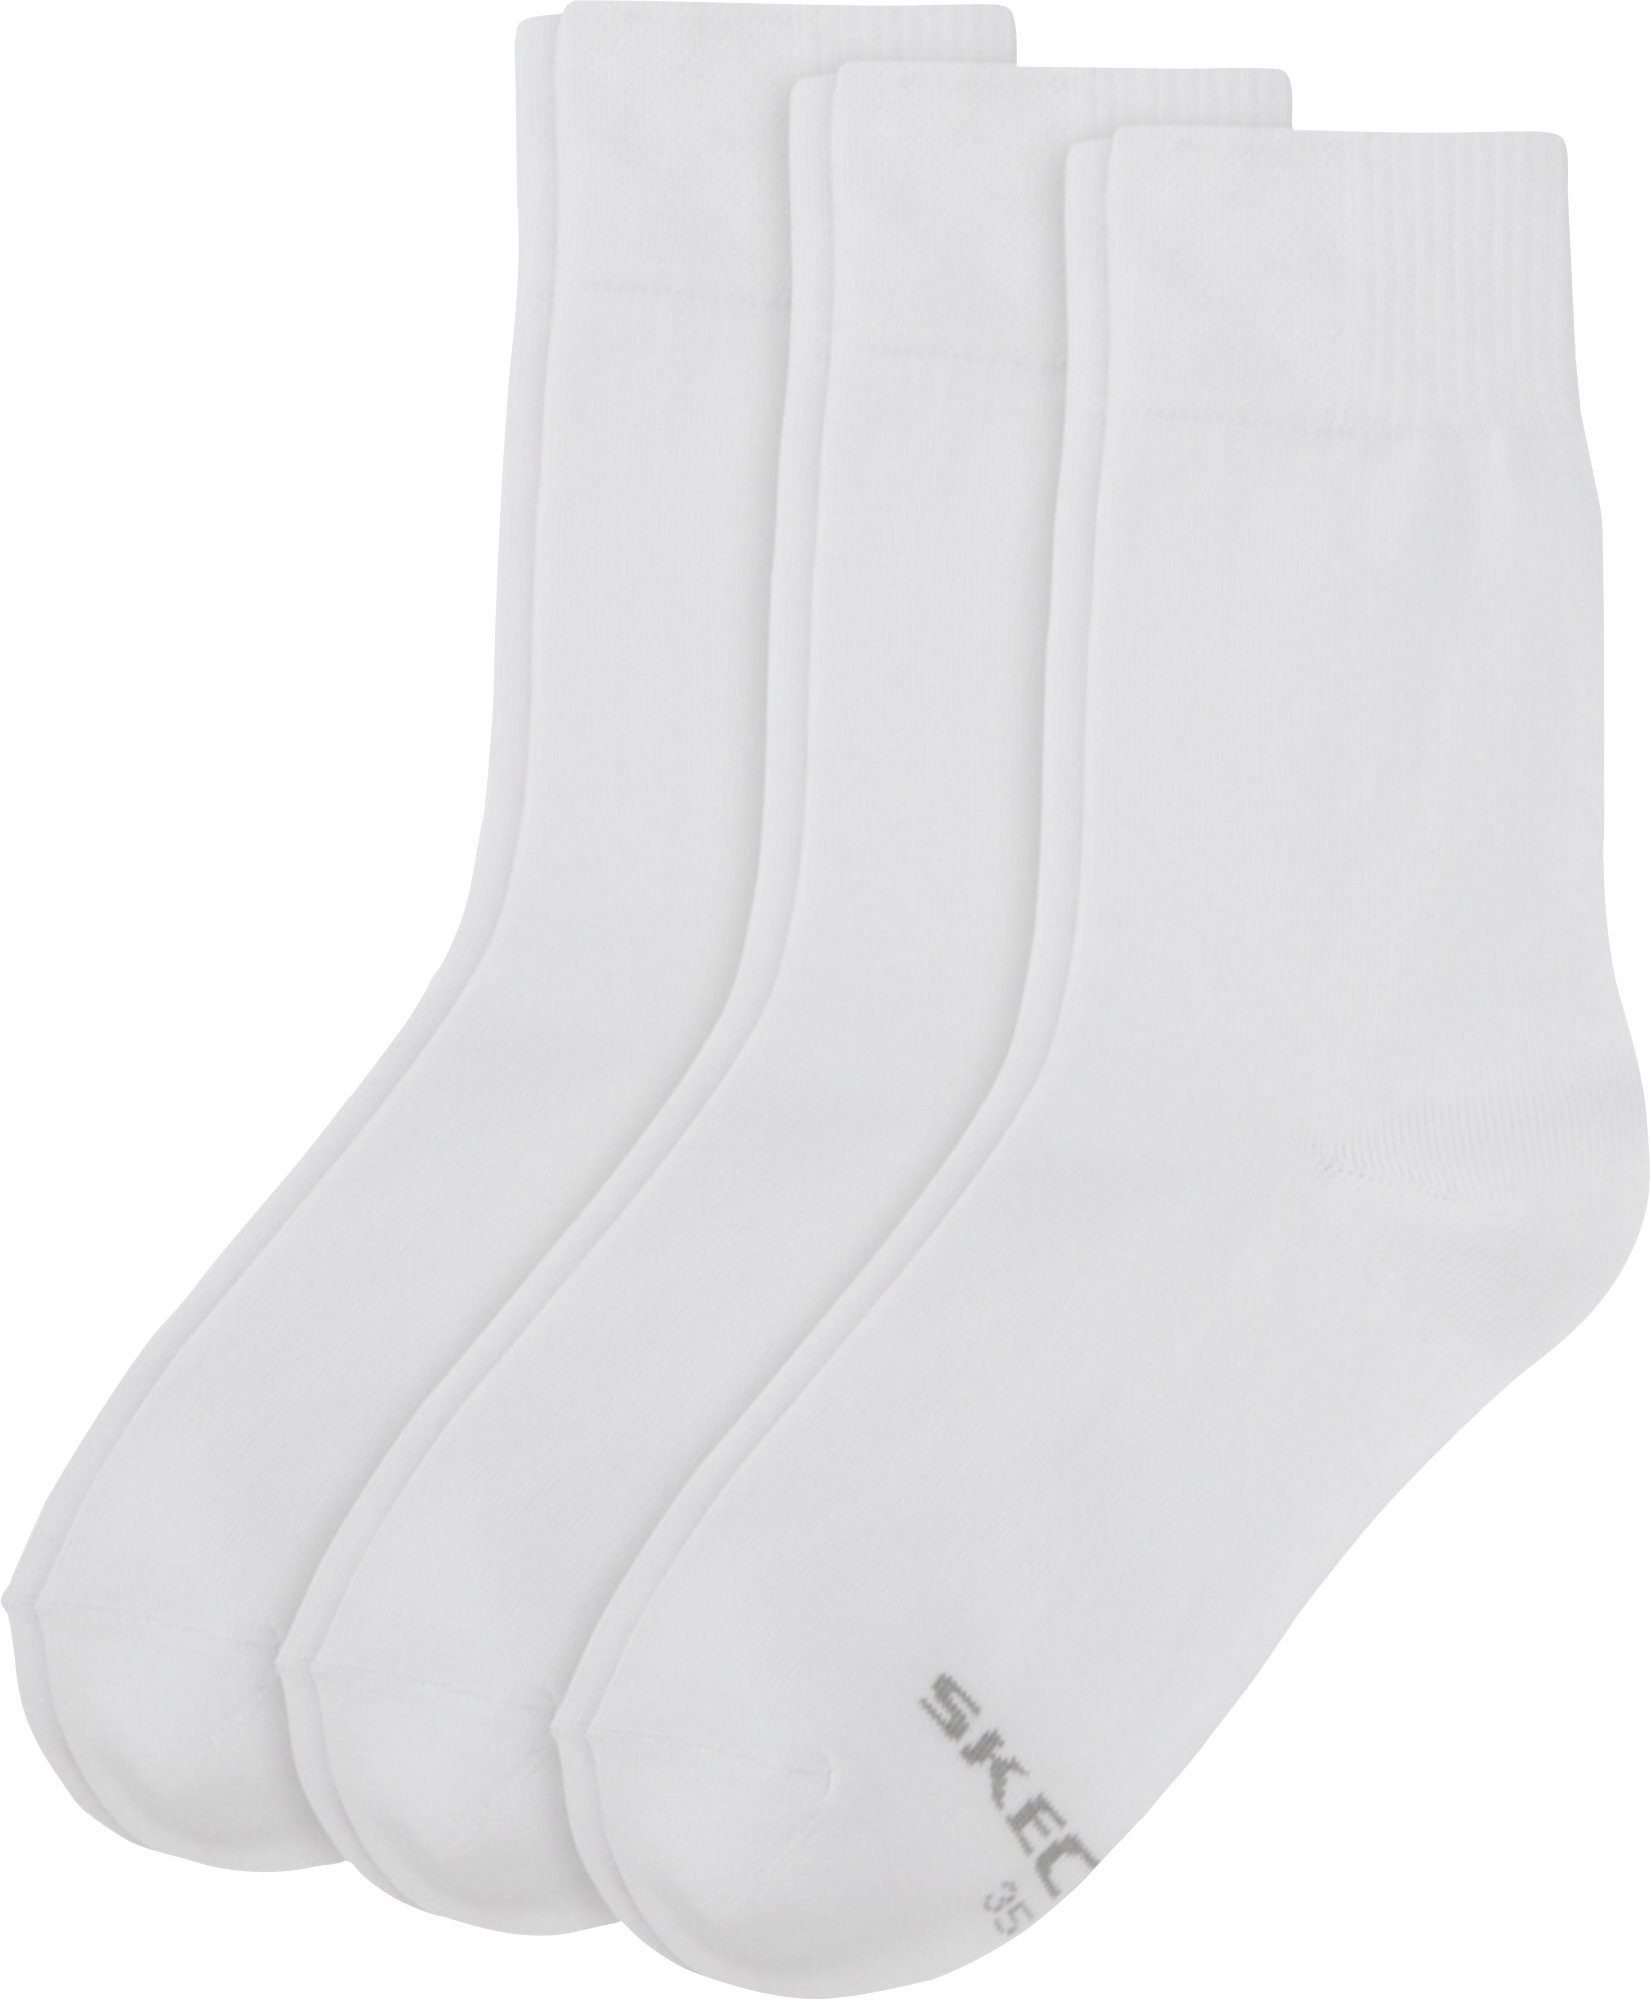 Uni Damen-Socken Socken 3 Paar Skechers weiß